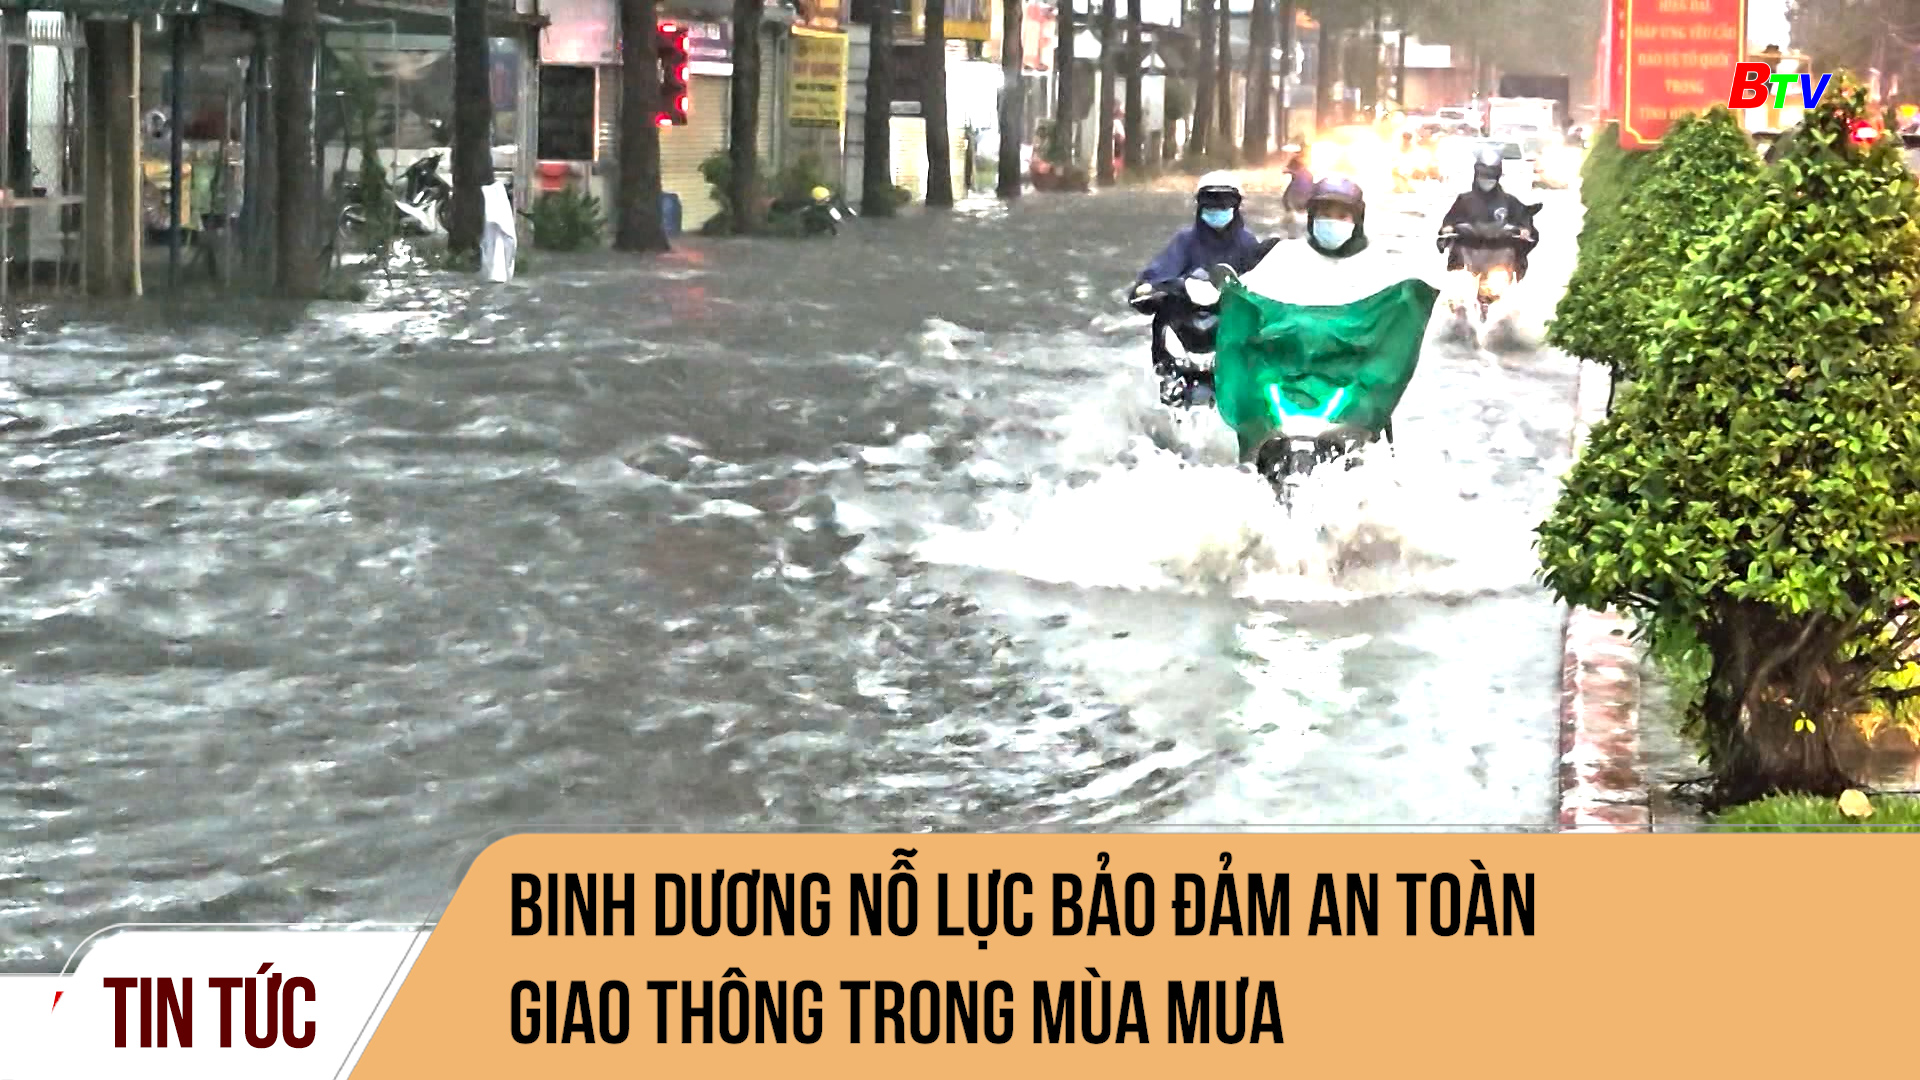 Bình Dương nỗ lực bảo đảm an toàn giao thông trong mùa mưa